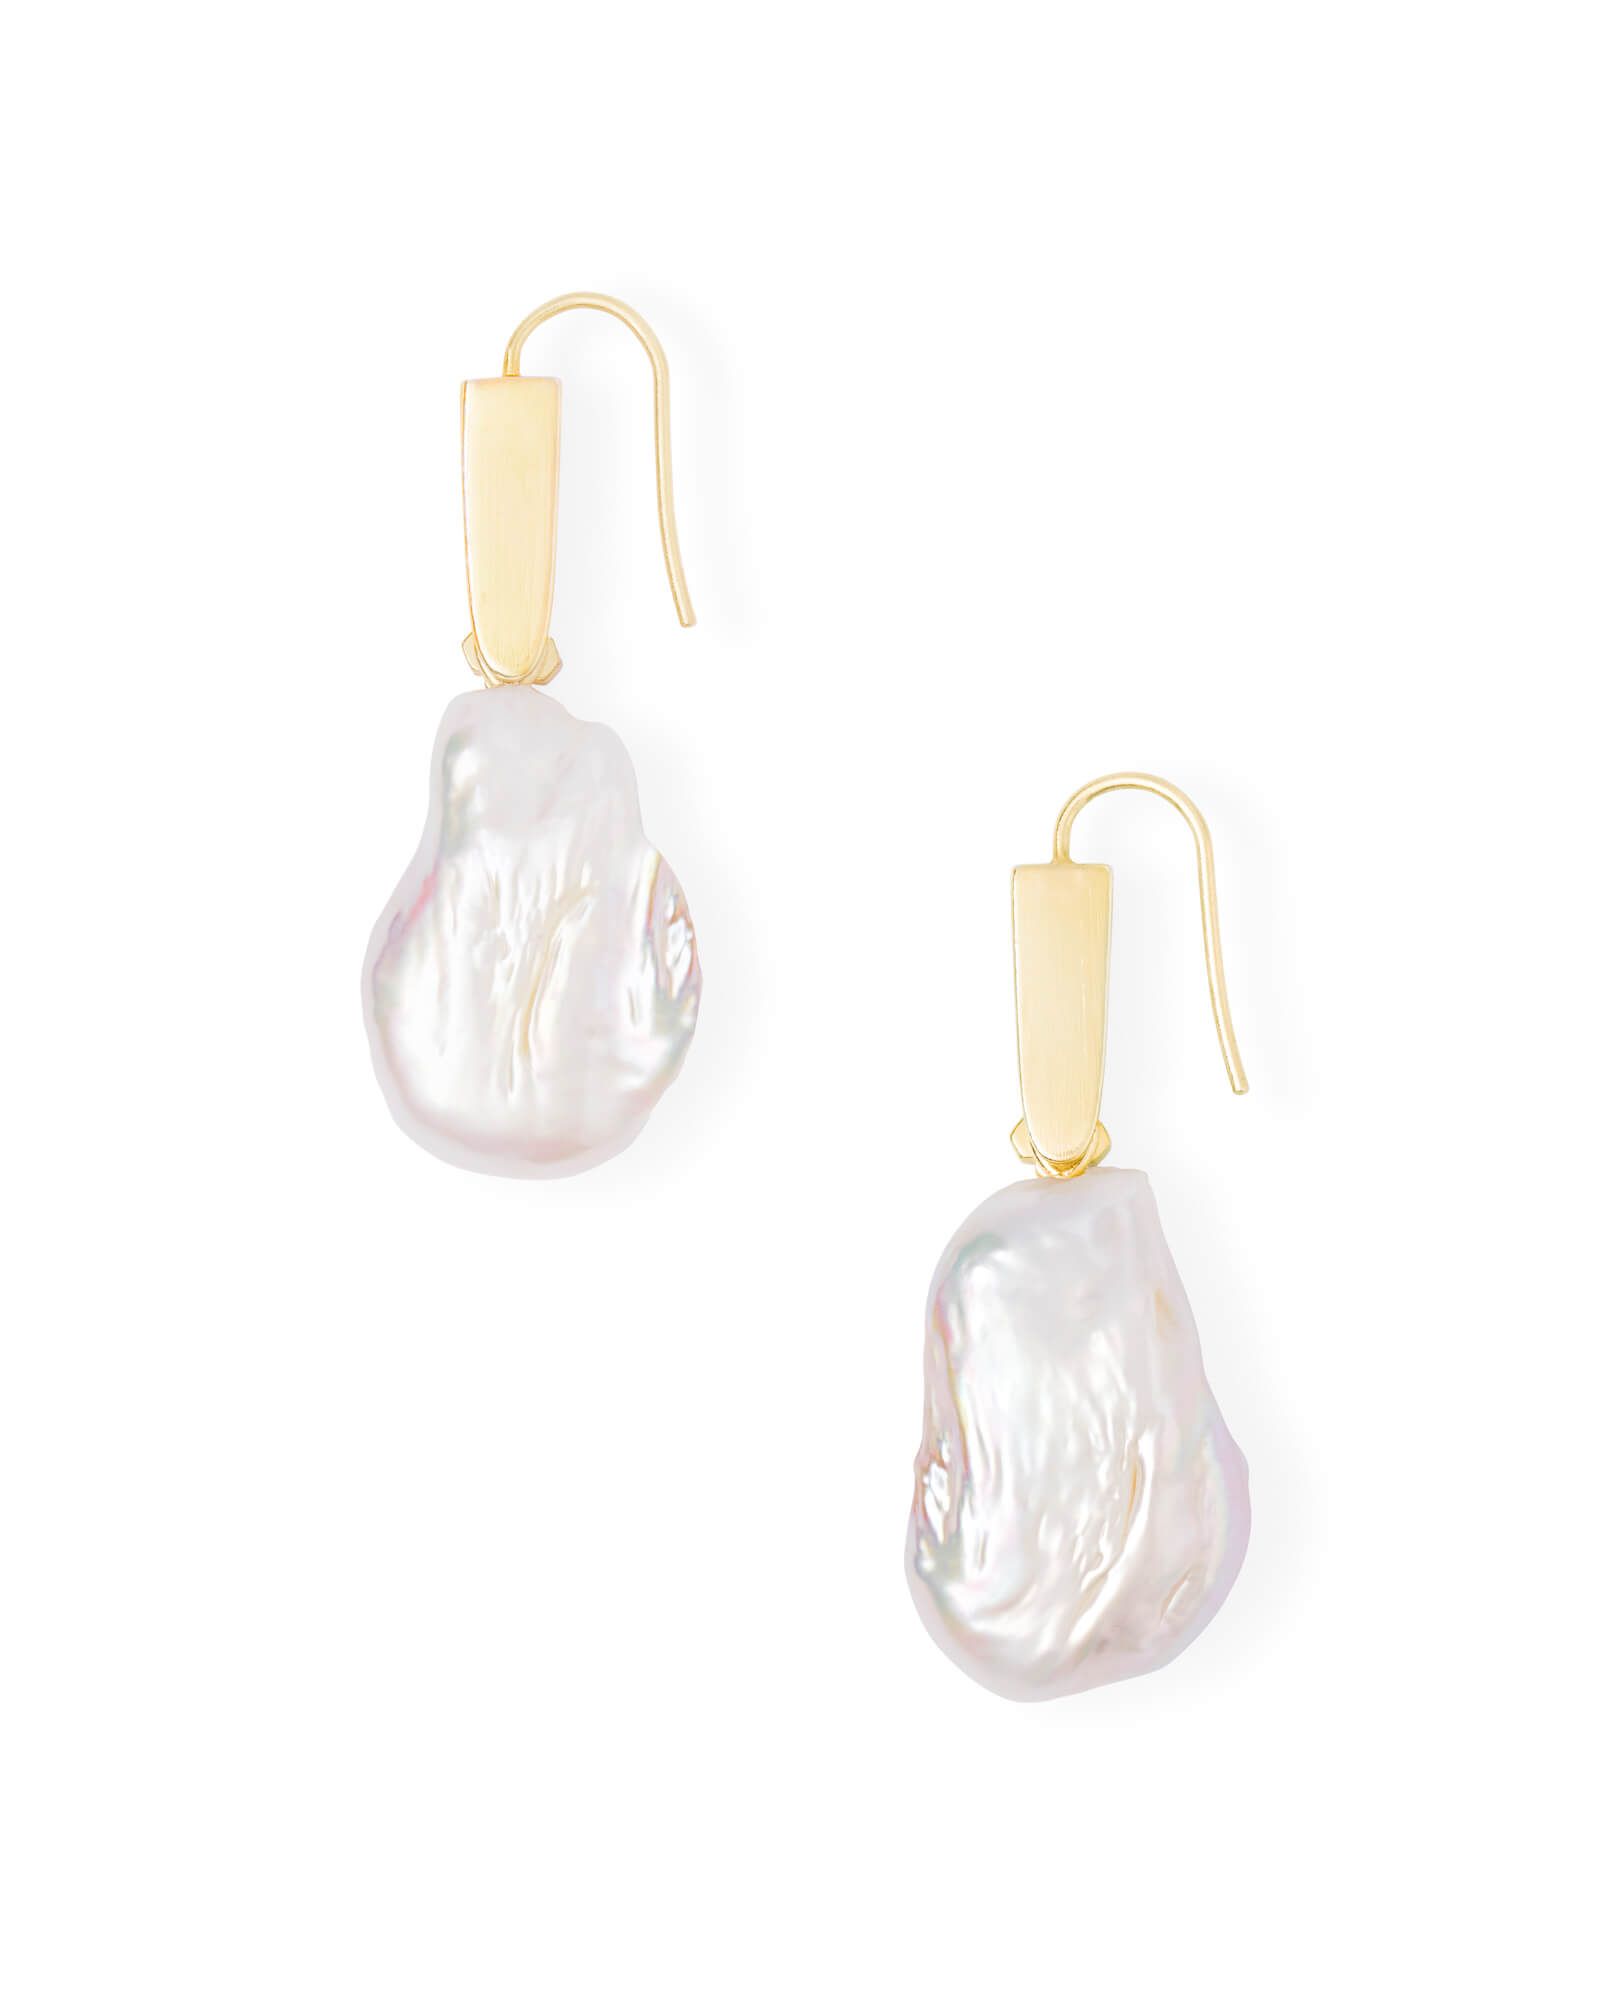 Darcey Gold Drop Earrings in Pearl | Kendra Scott | Kendra Scott